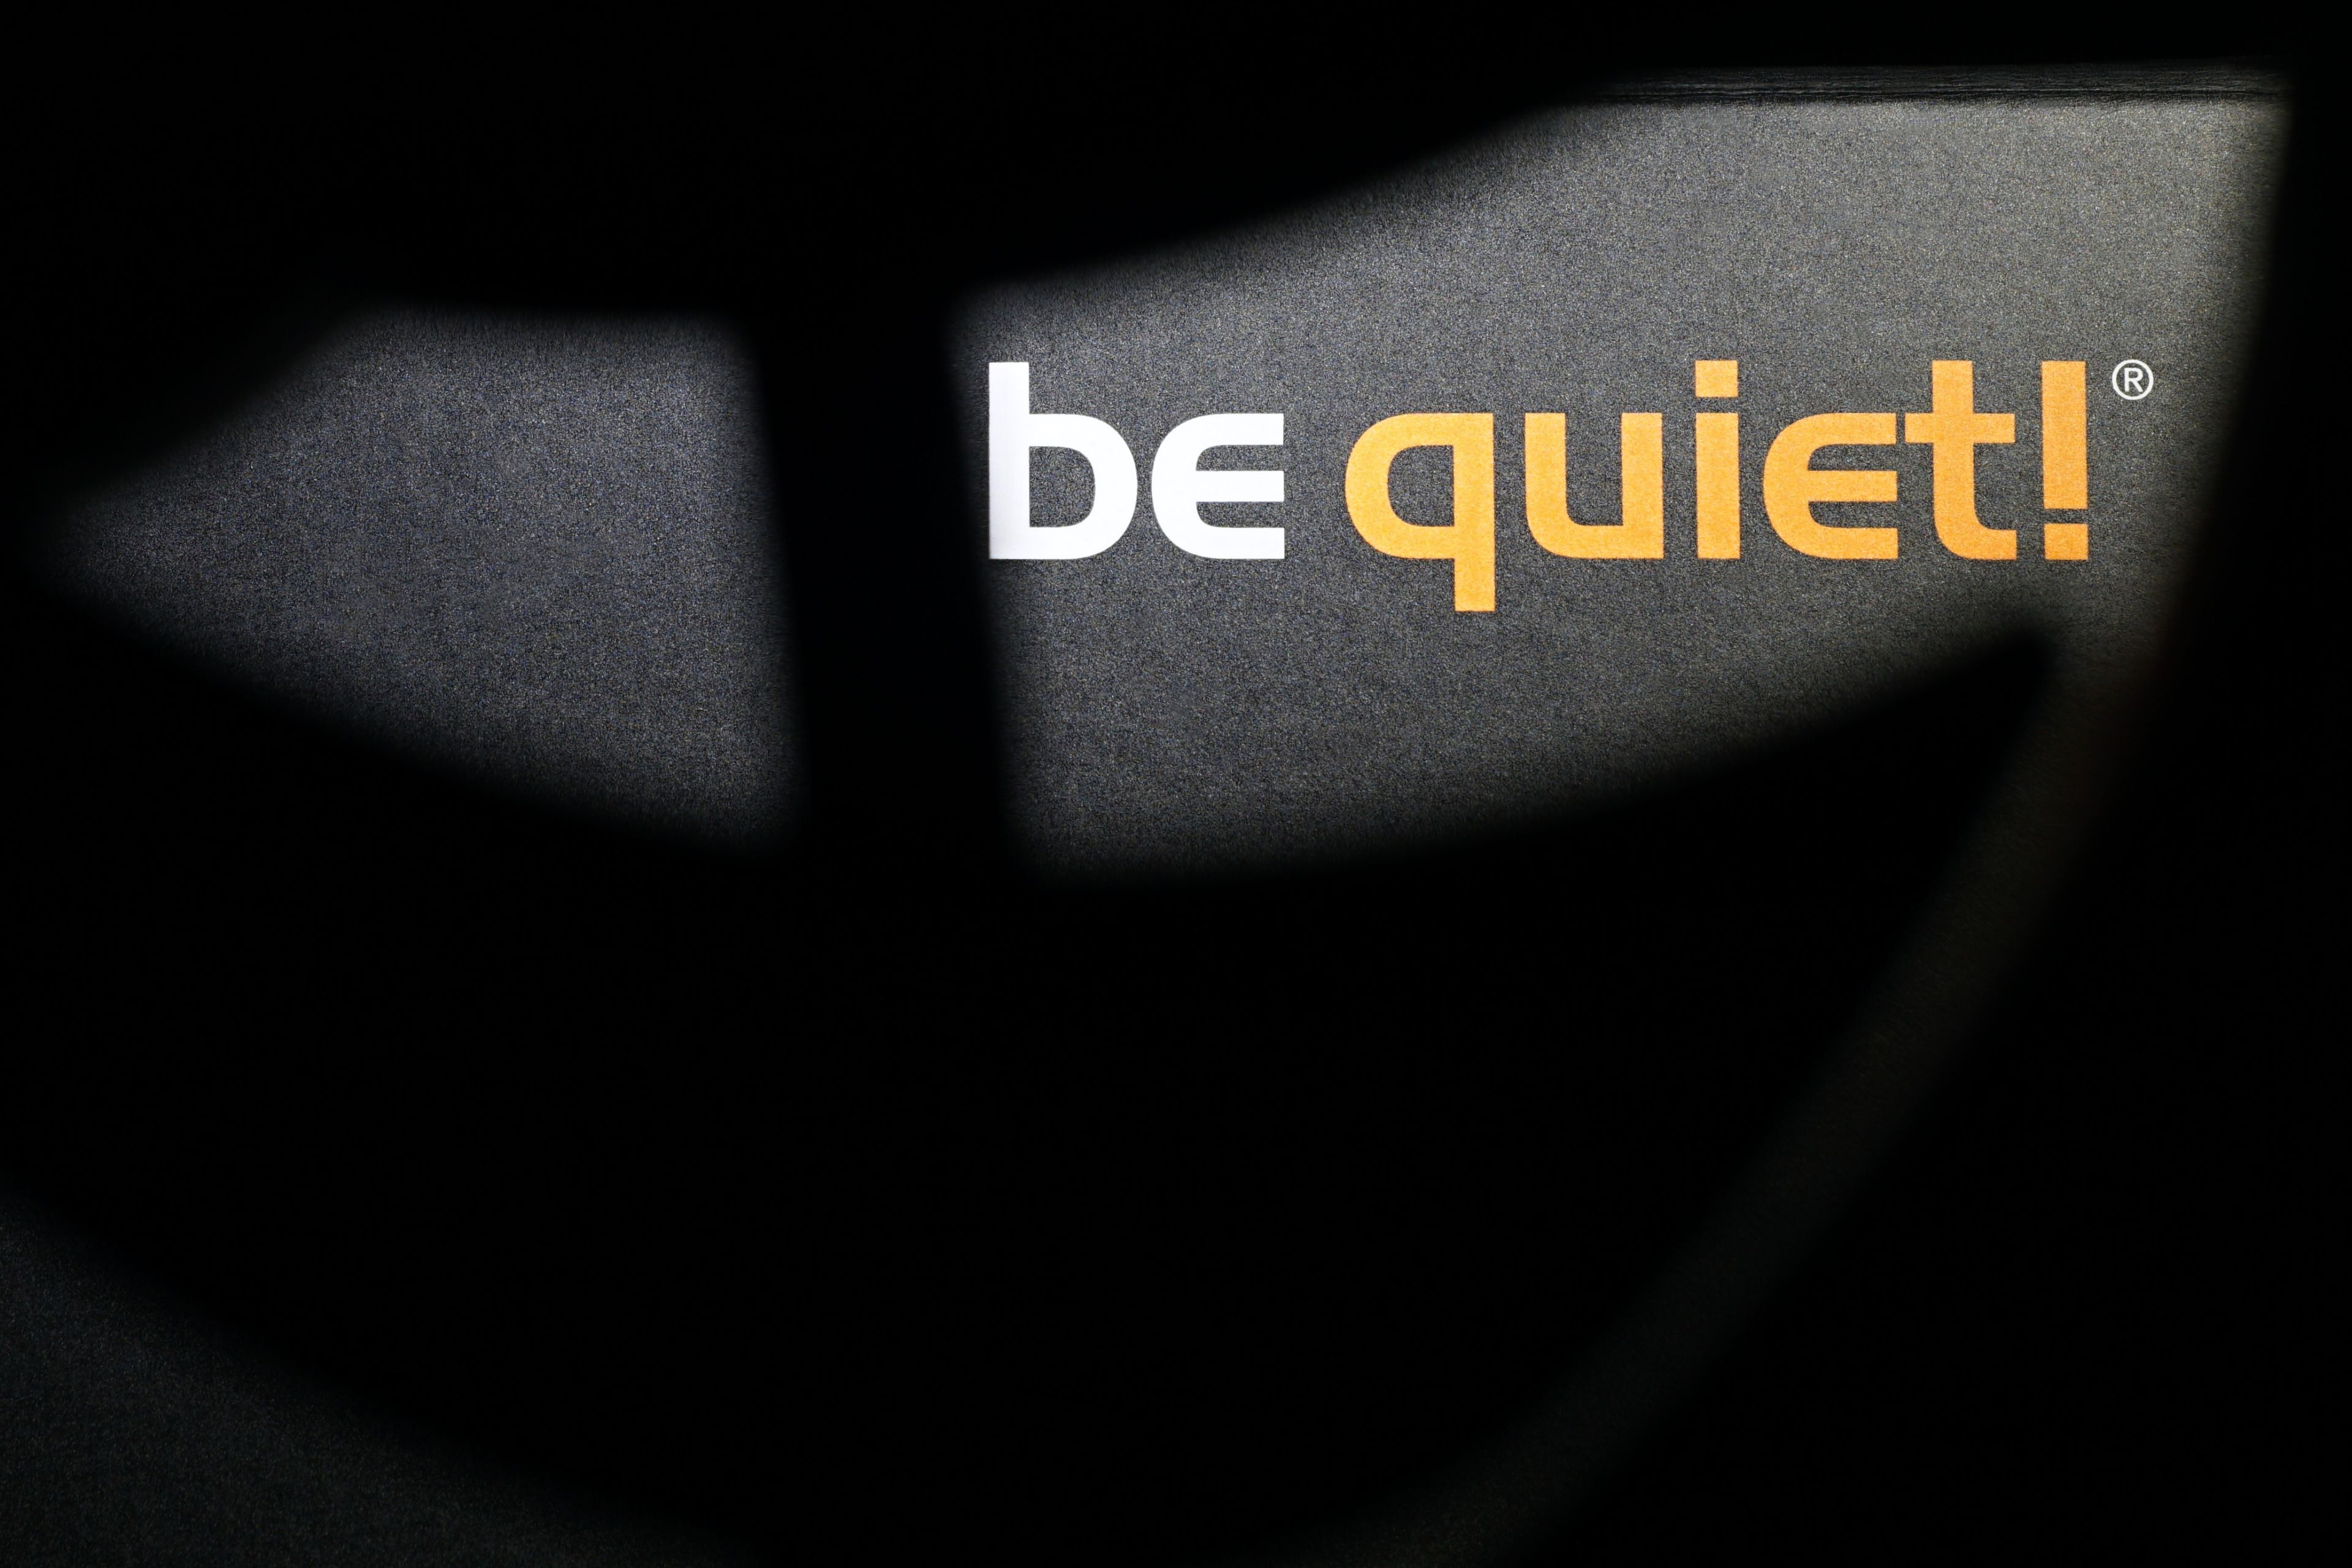 be quiet! 140mm Silent Wings Pro 4 Case Fan (Black)